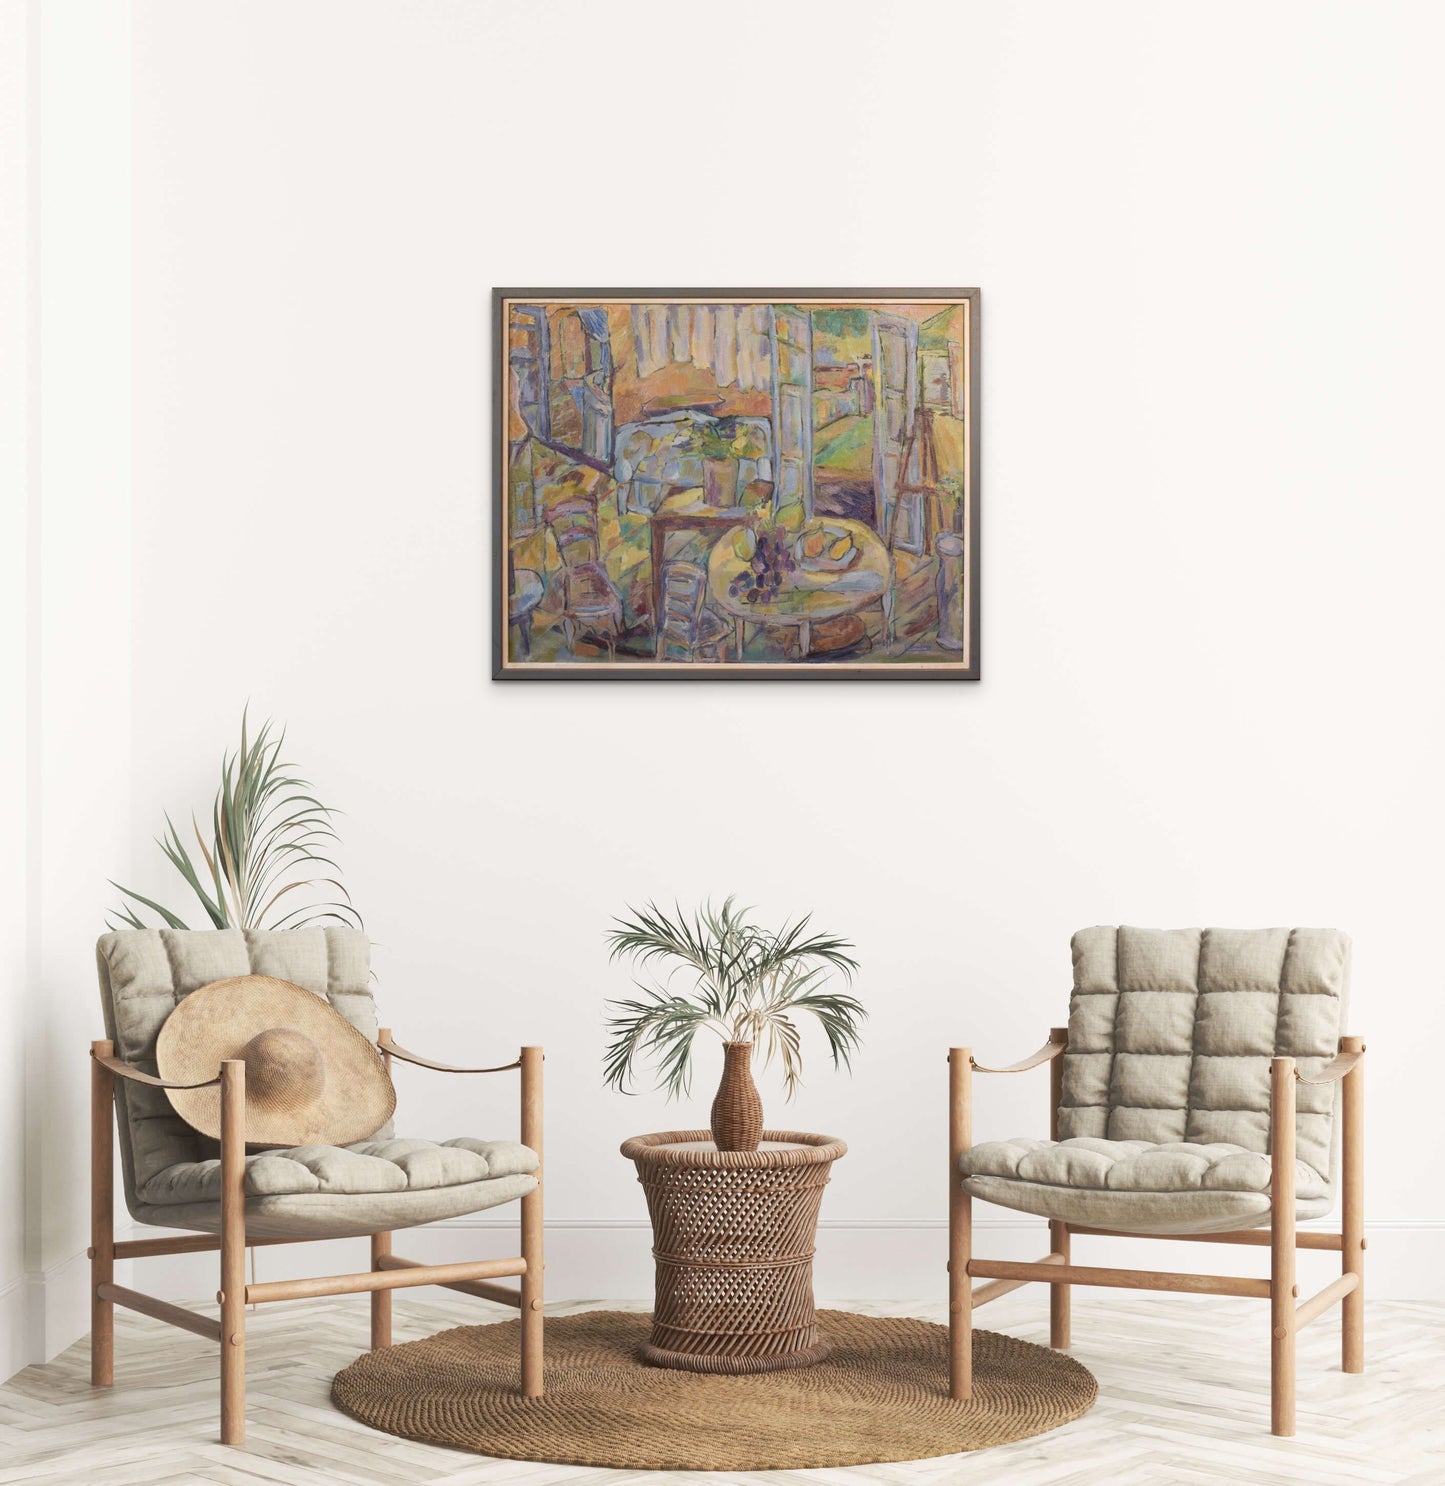 Fauve Interior and Garden Scene - Oil on Canvas